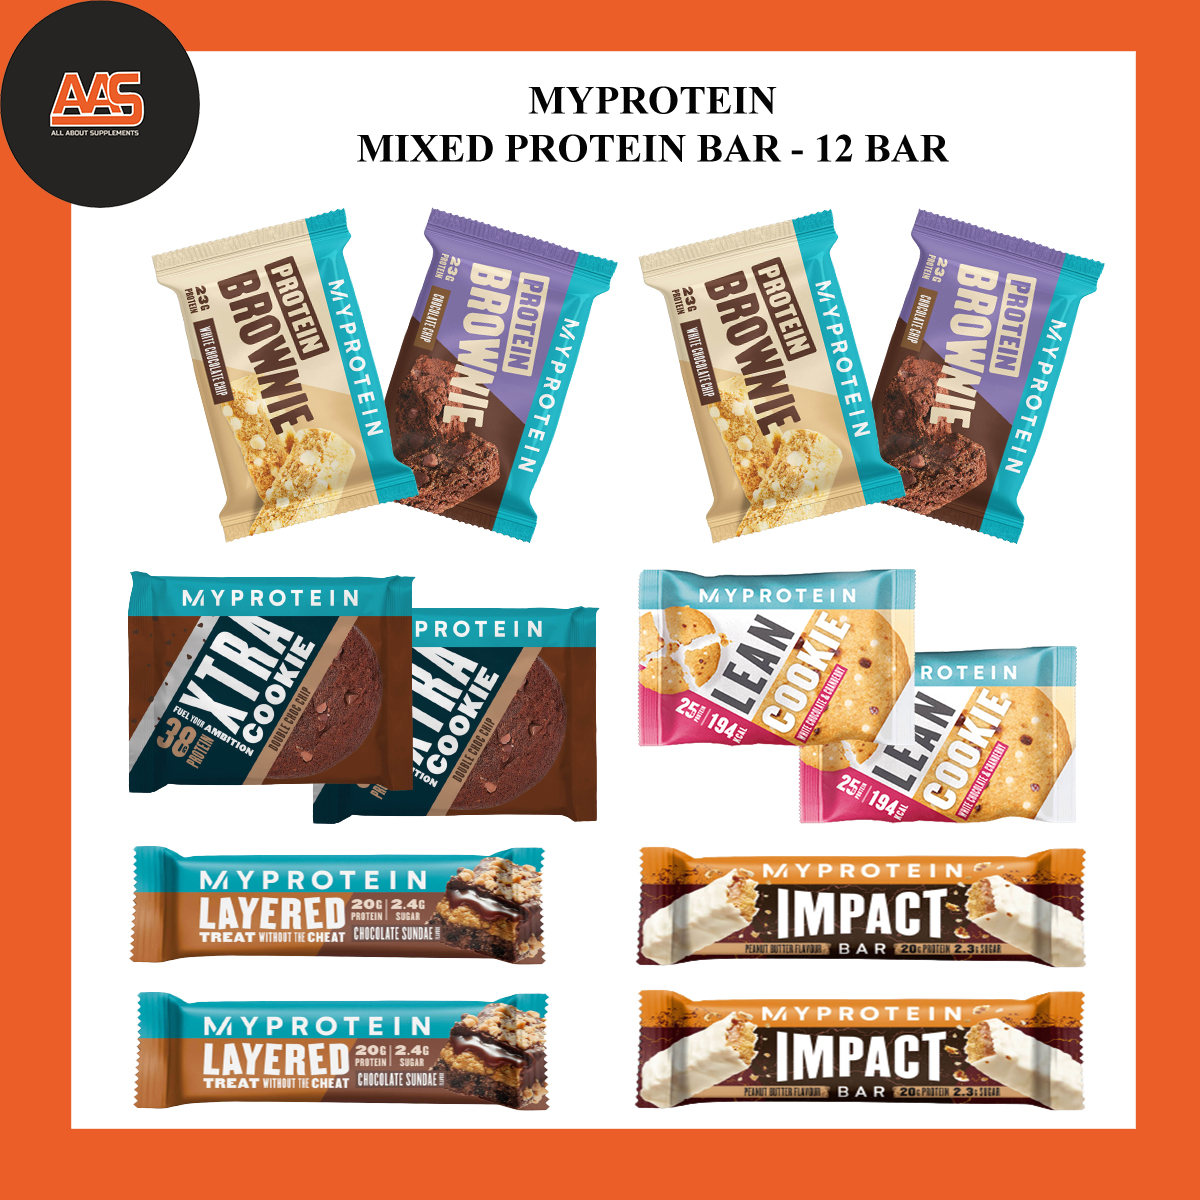 PROTEIN BAR - MYPROTEIN- MIXED PROTEIN BAR BOX - 12 PIECES - Hộp 12 thanh bánh chất lượng từ nhiều loại của hãng Myprotein - Anh thumbnail